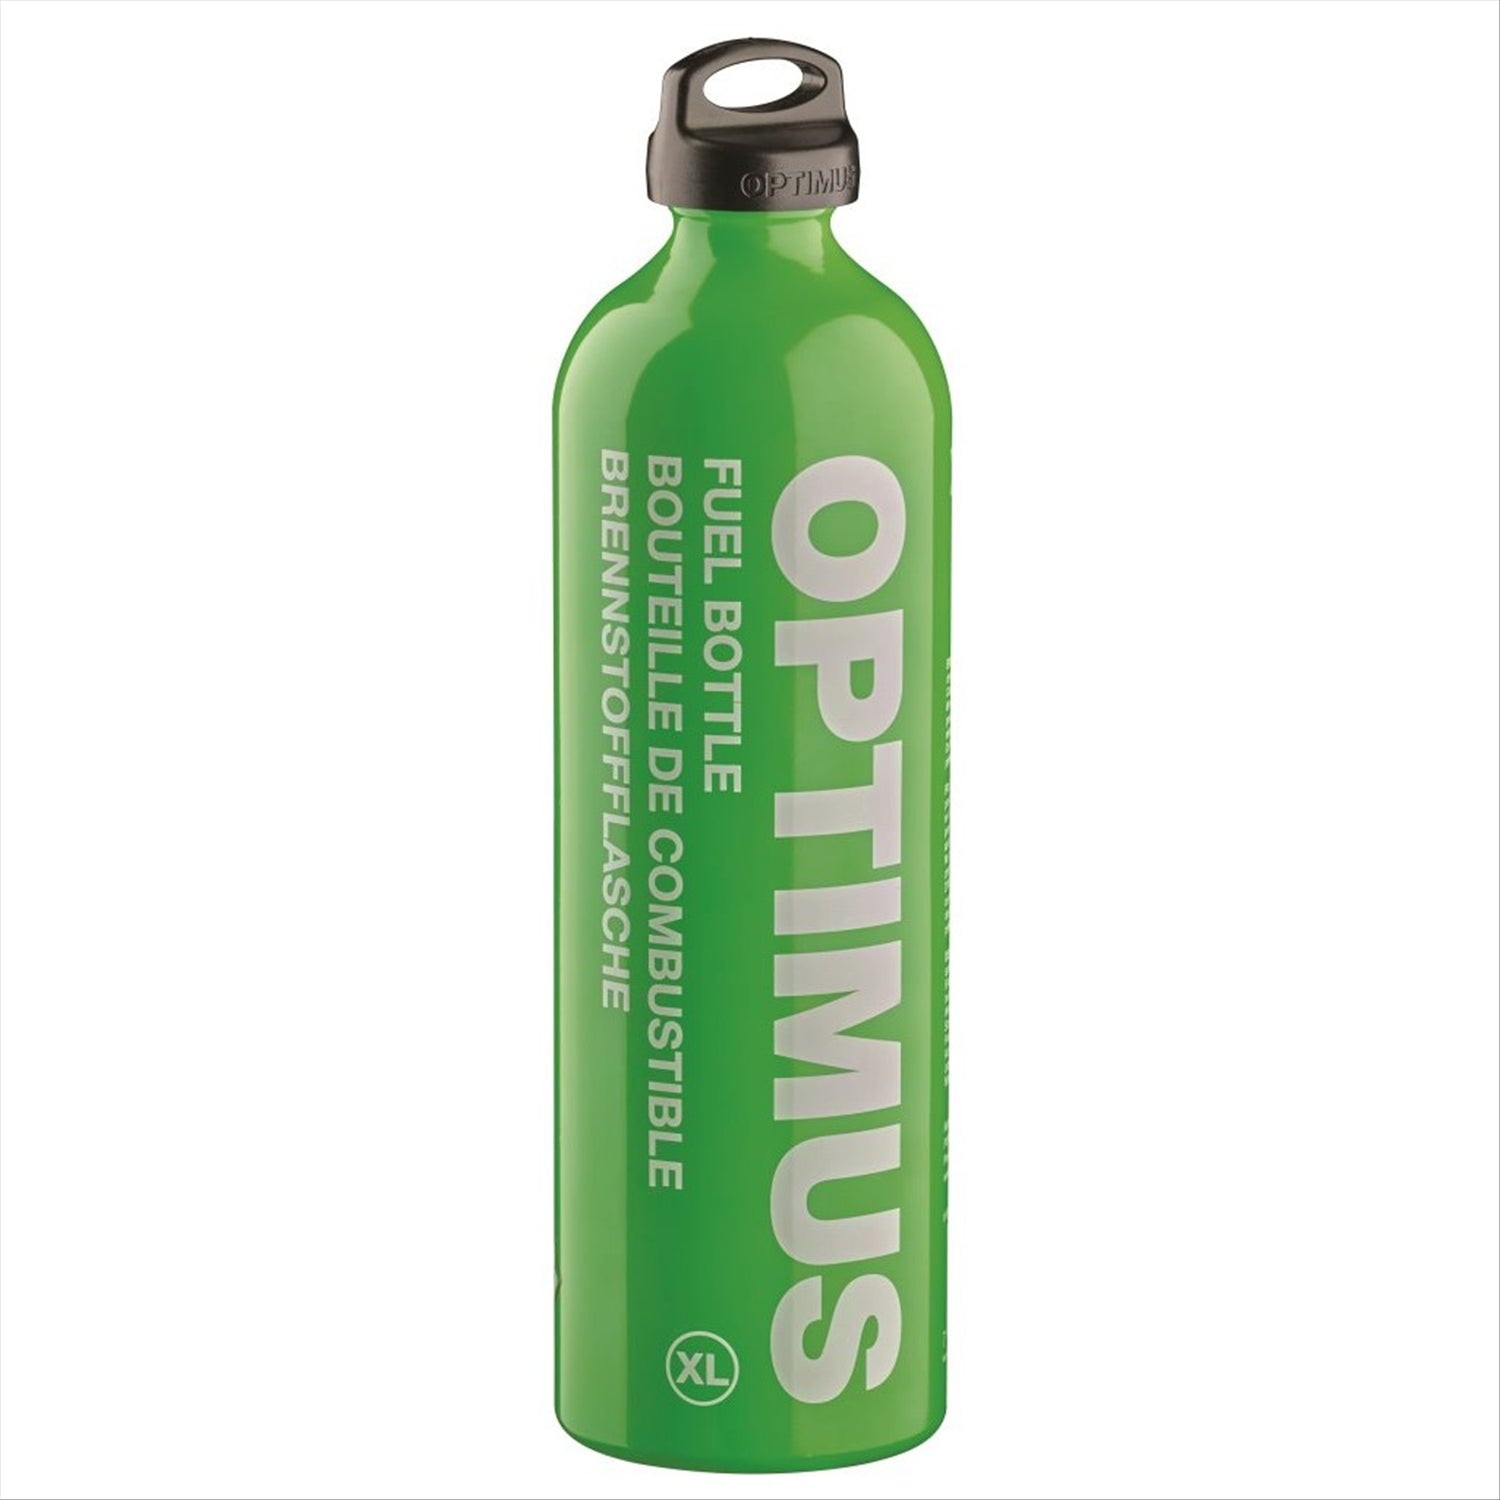 Optimus Optimus Fuel Bottles - S, M, L or XL sizes